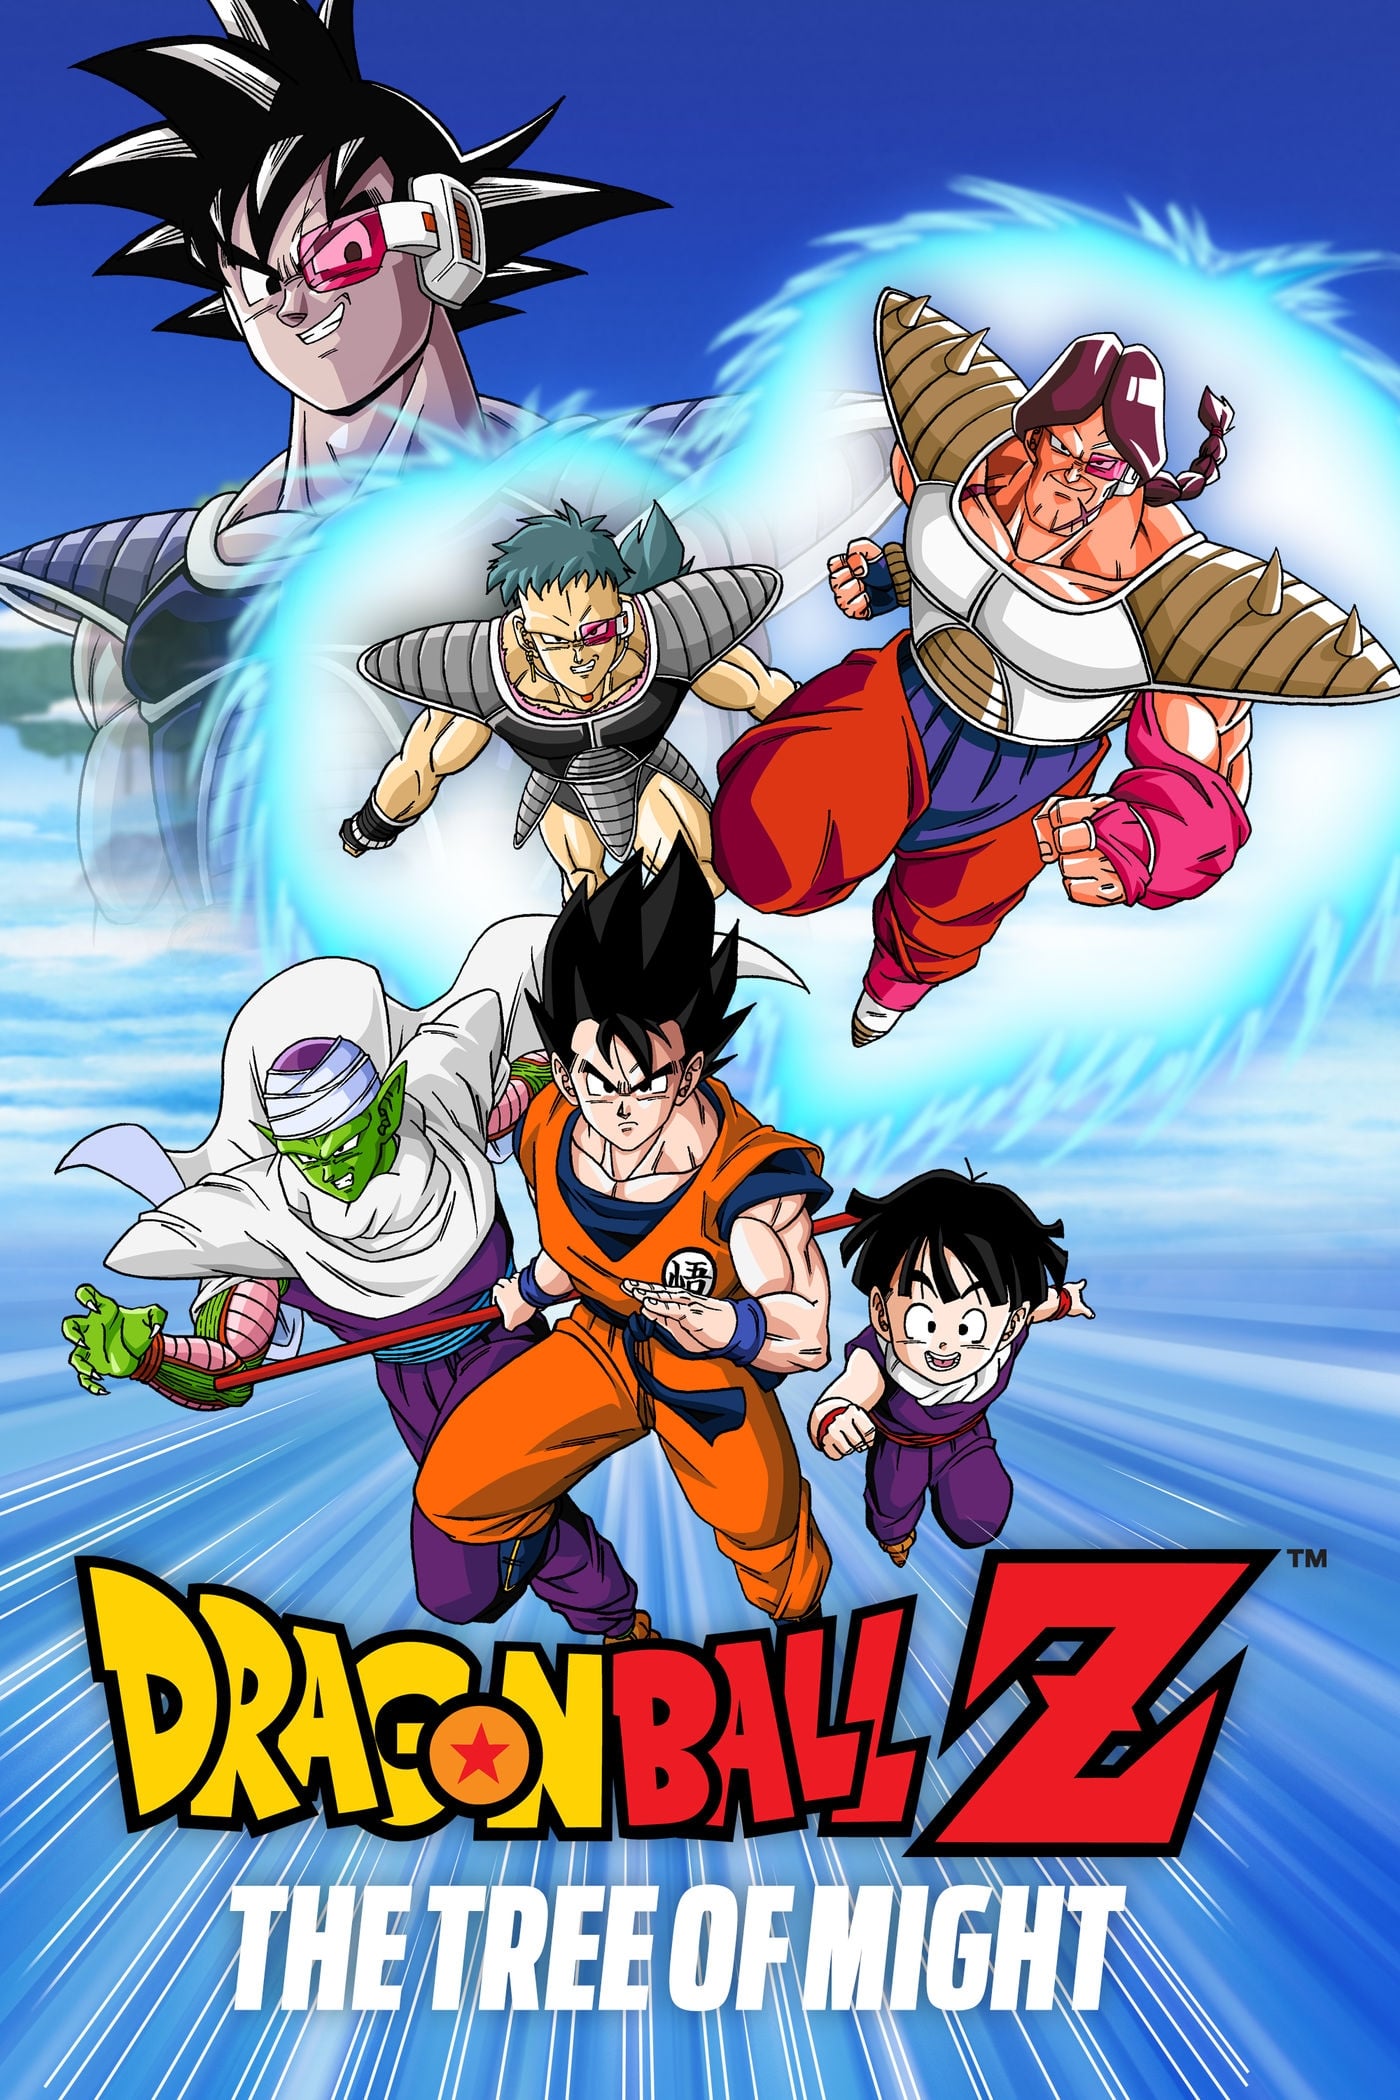 Dragon Ball Z: La super batalla